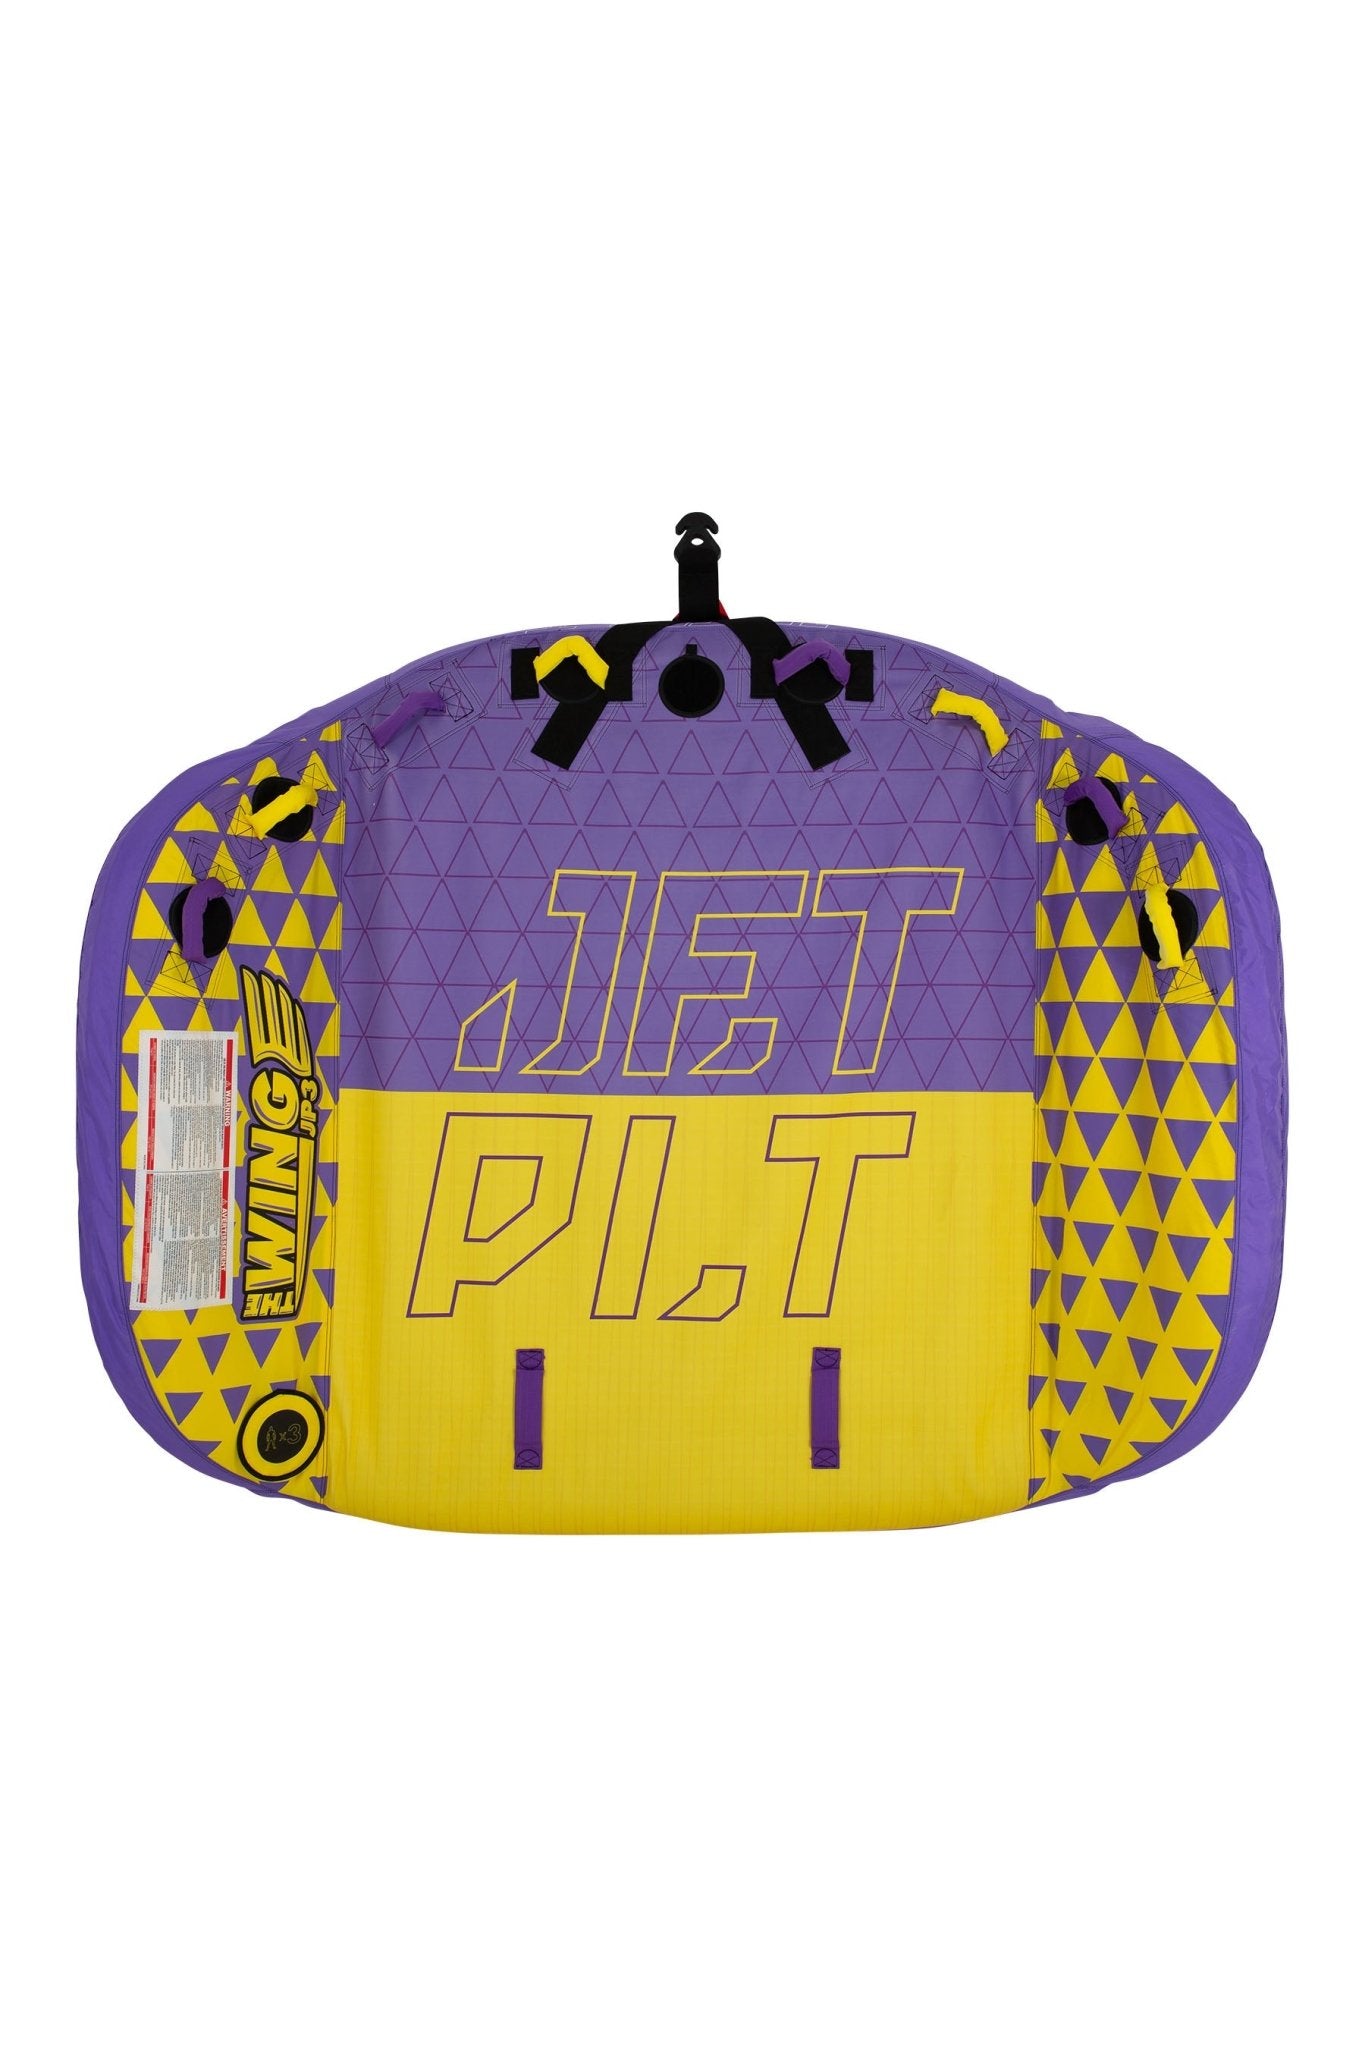 JP3 WING TOWABLE -Jet PilotJA22007-Yellow/Purple-